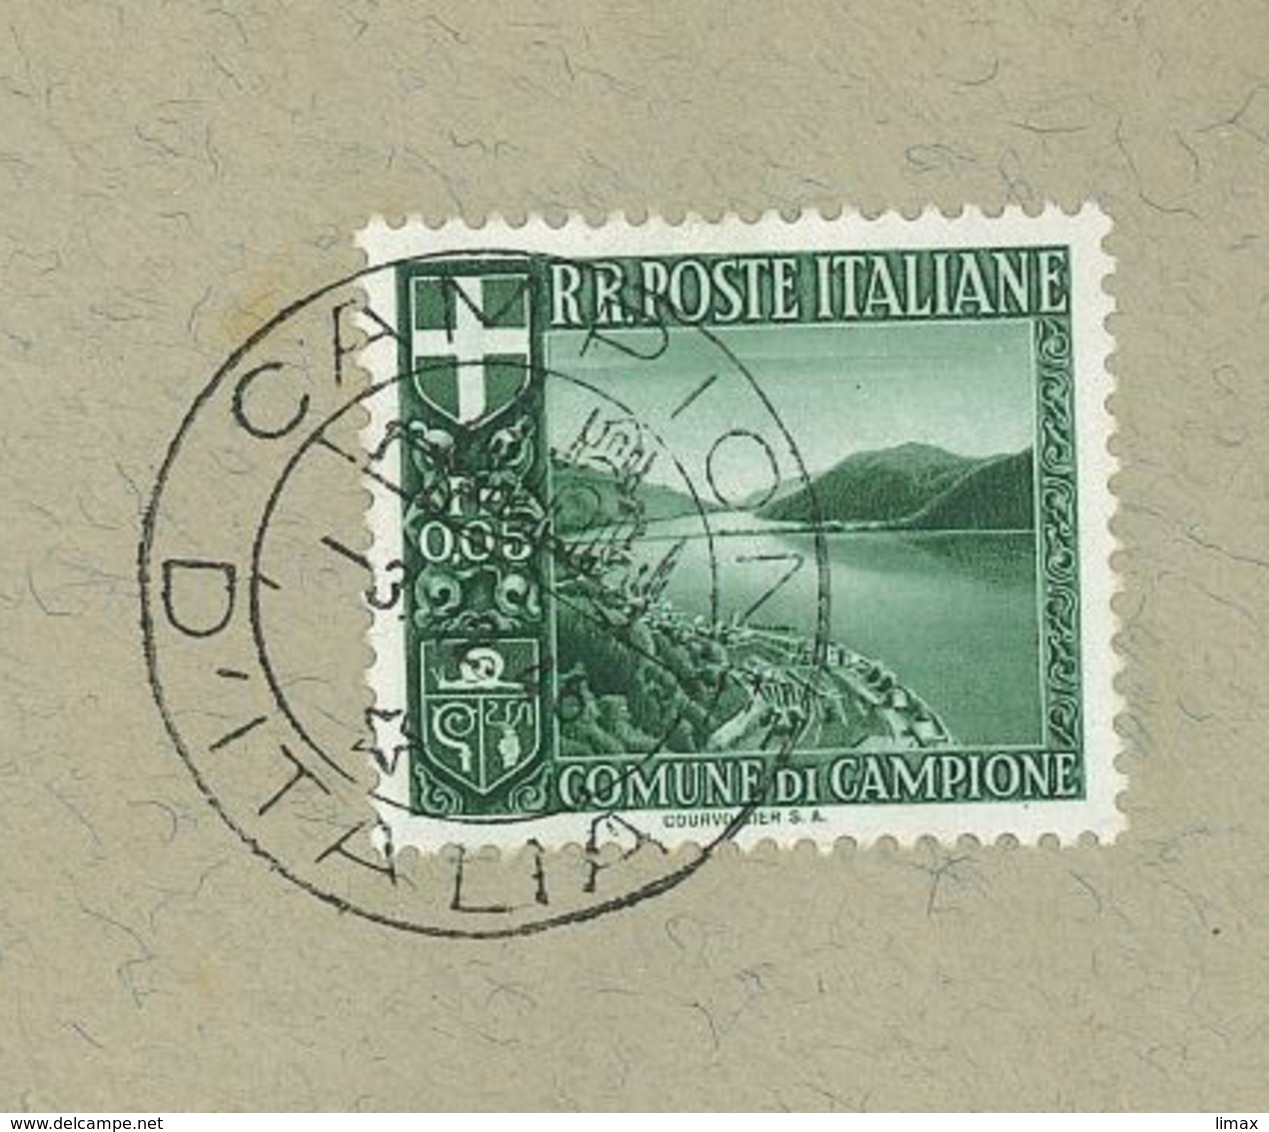 Campione D'Italia 1946 Wappen Schnecke Tessin Exklave Lugano Mussolini (1933) - 1946-47 Corpo Polacco Periode